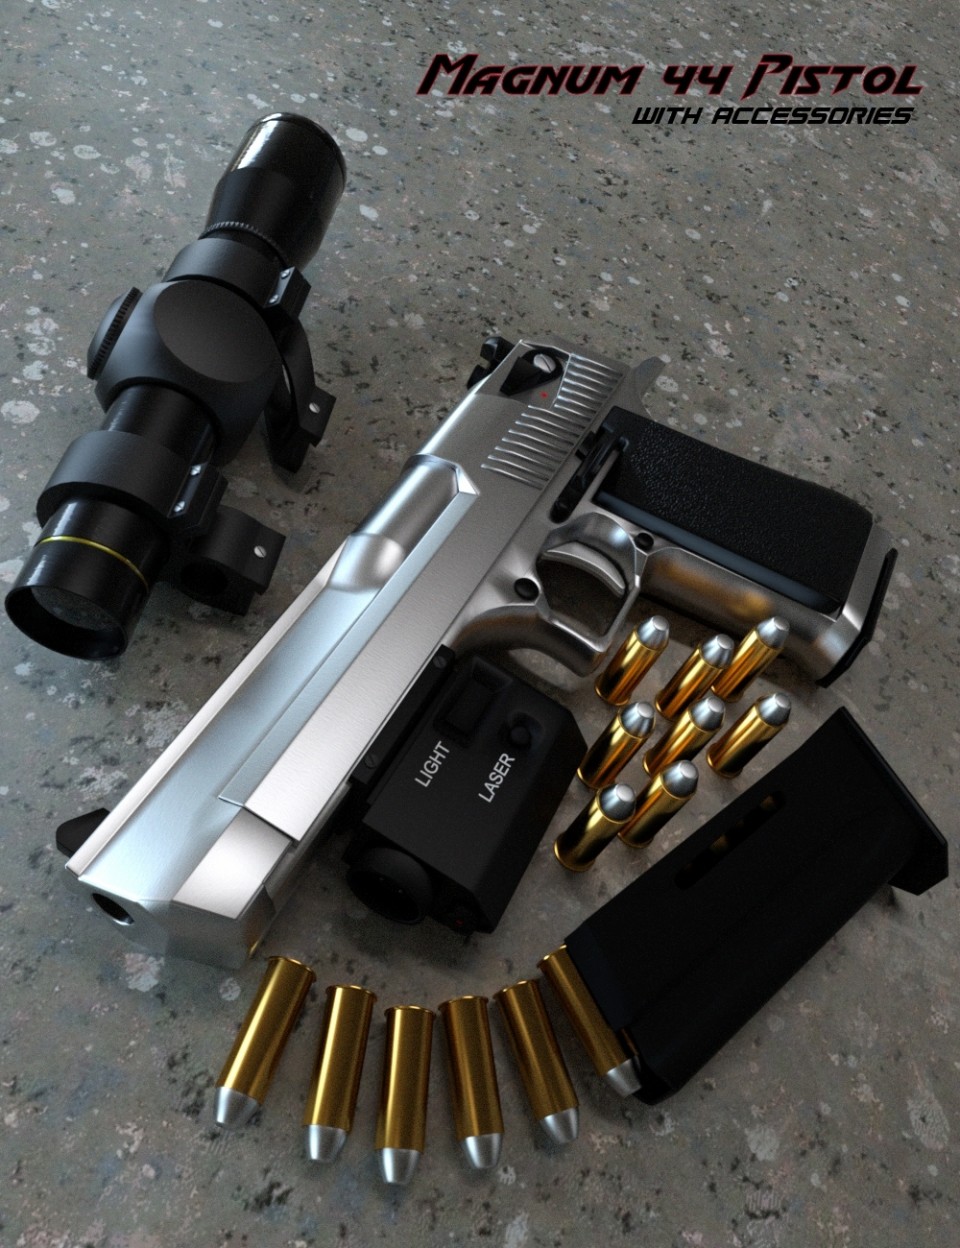 Magnum 44 Pistol with Accessories